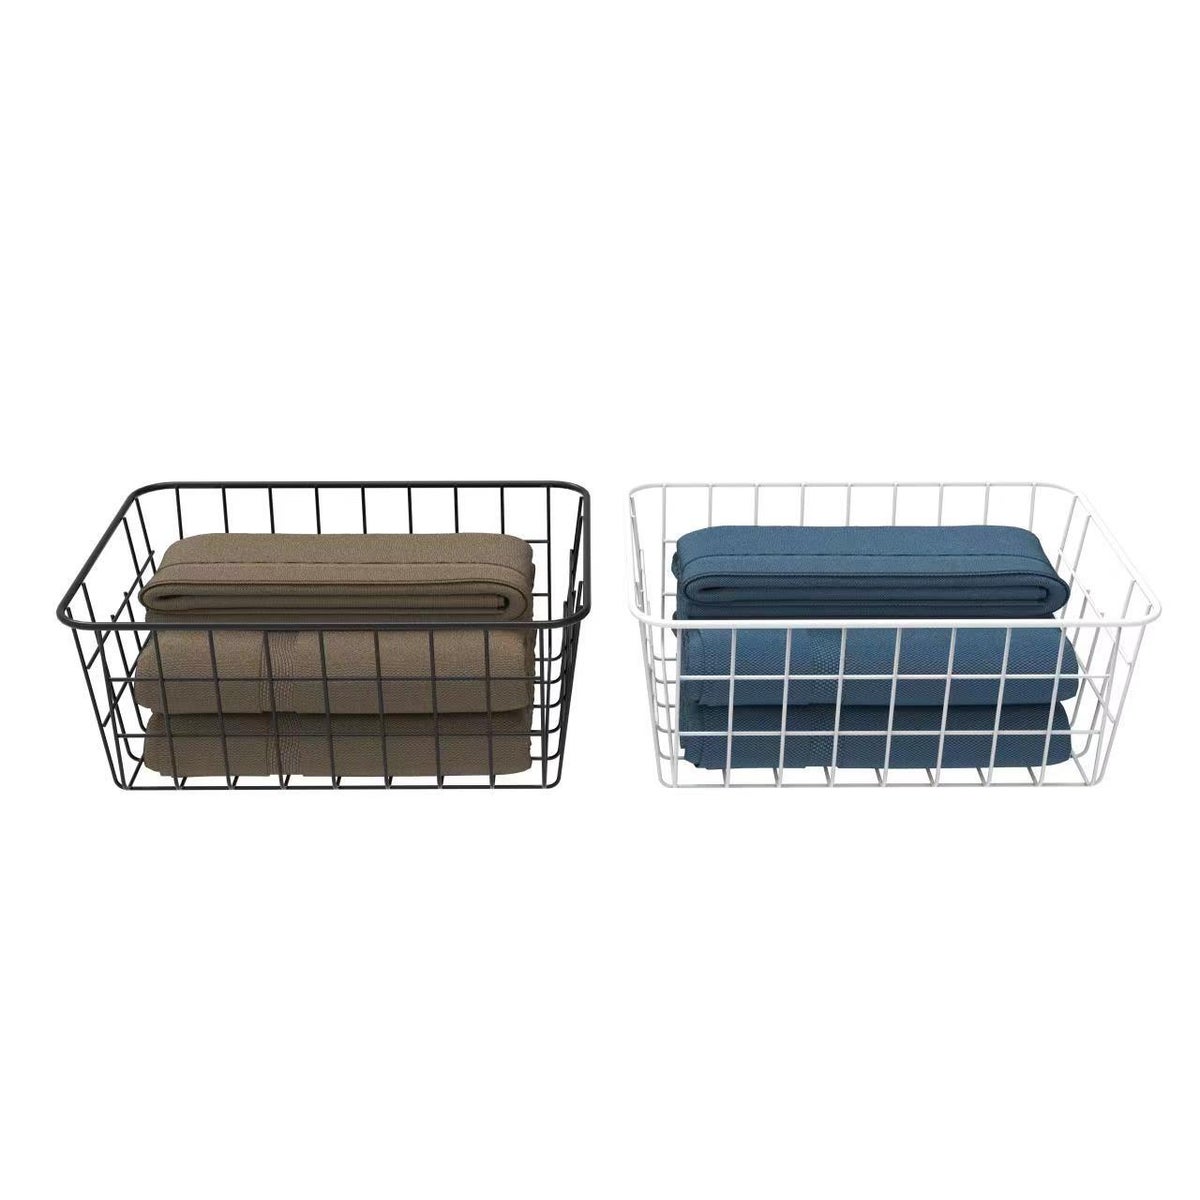 Black/White - Set of 3 Medium Nesting Storage Baskets 11"x8.6"x4.9" (6sets)